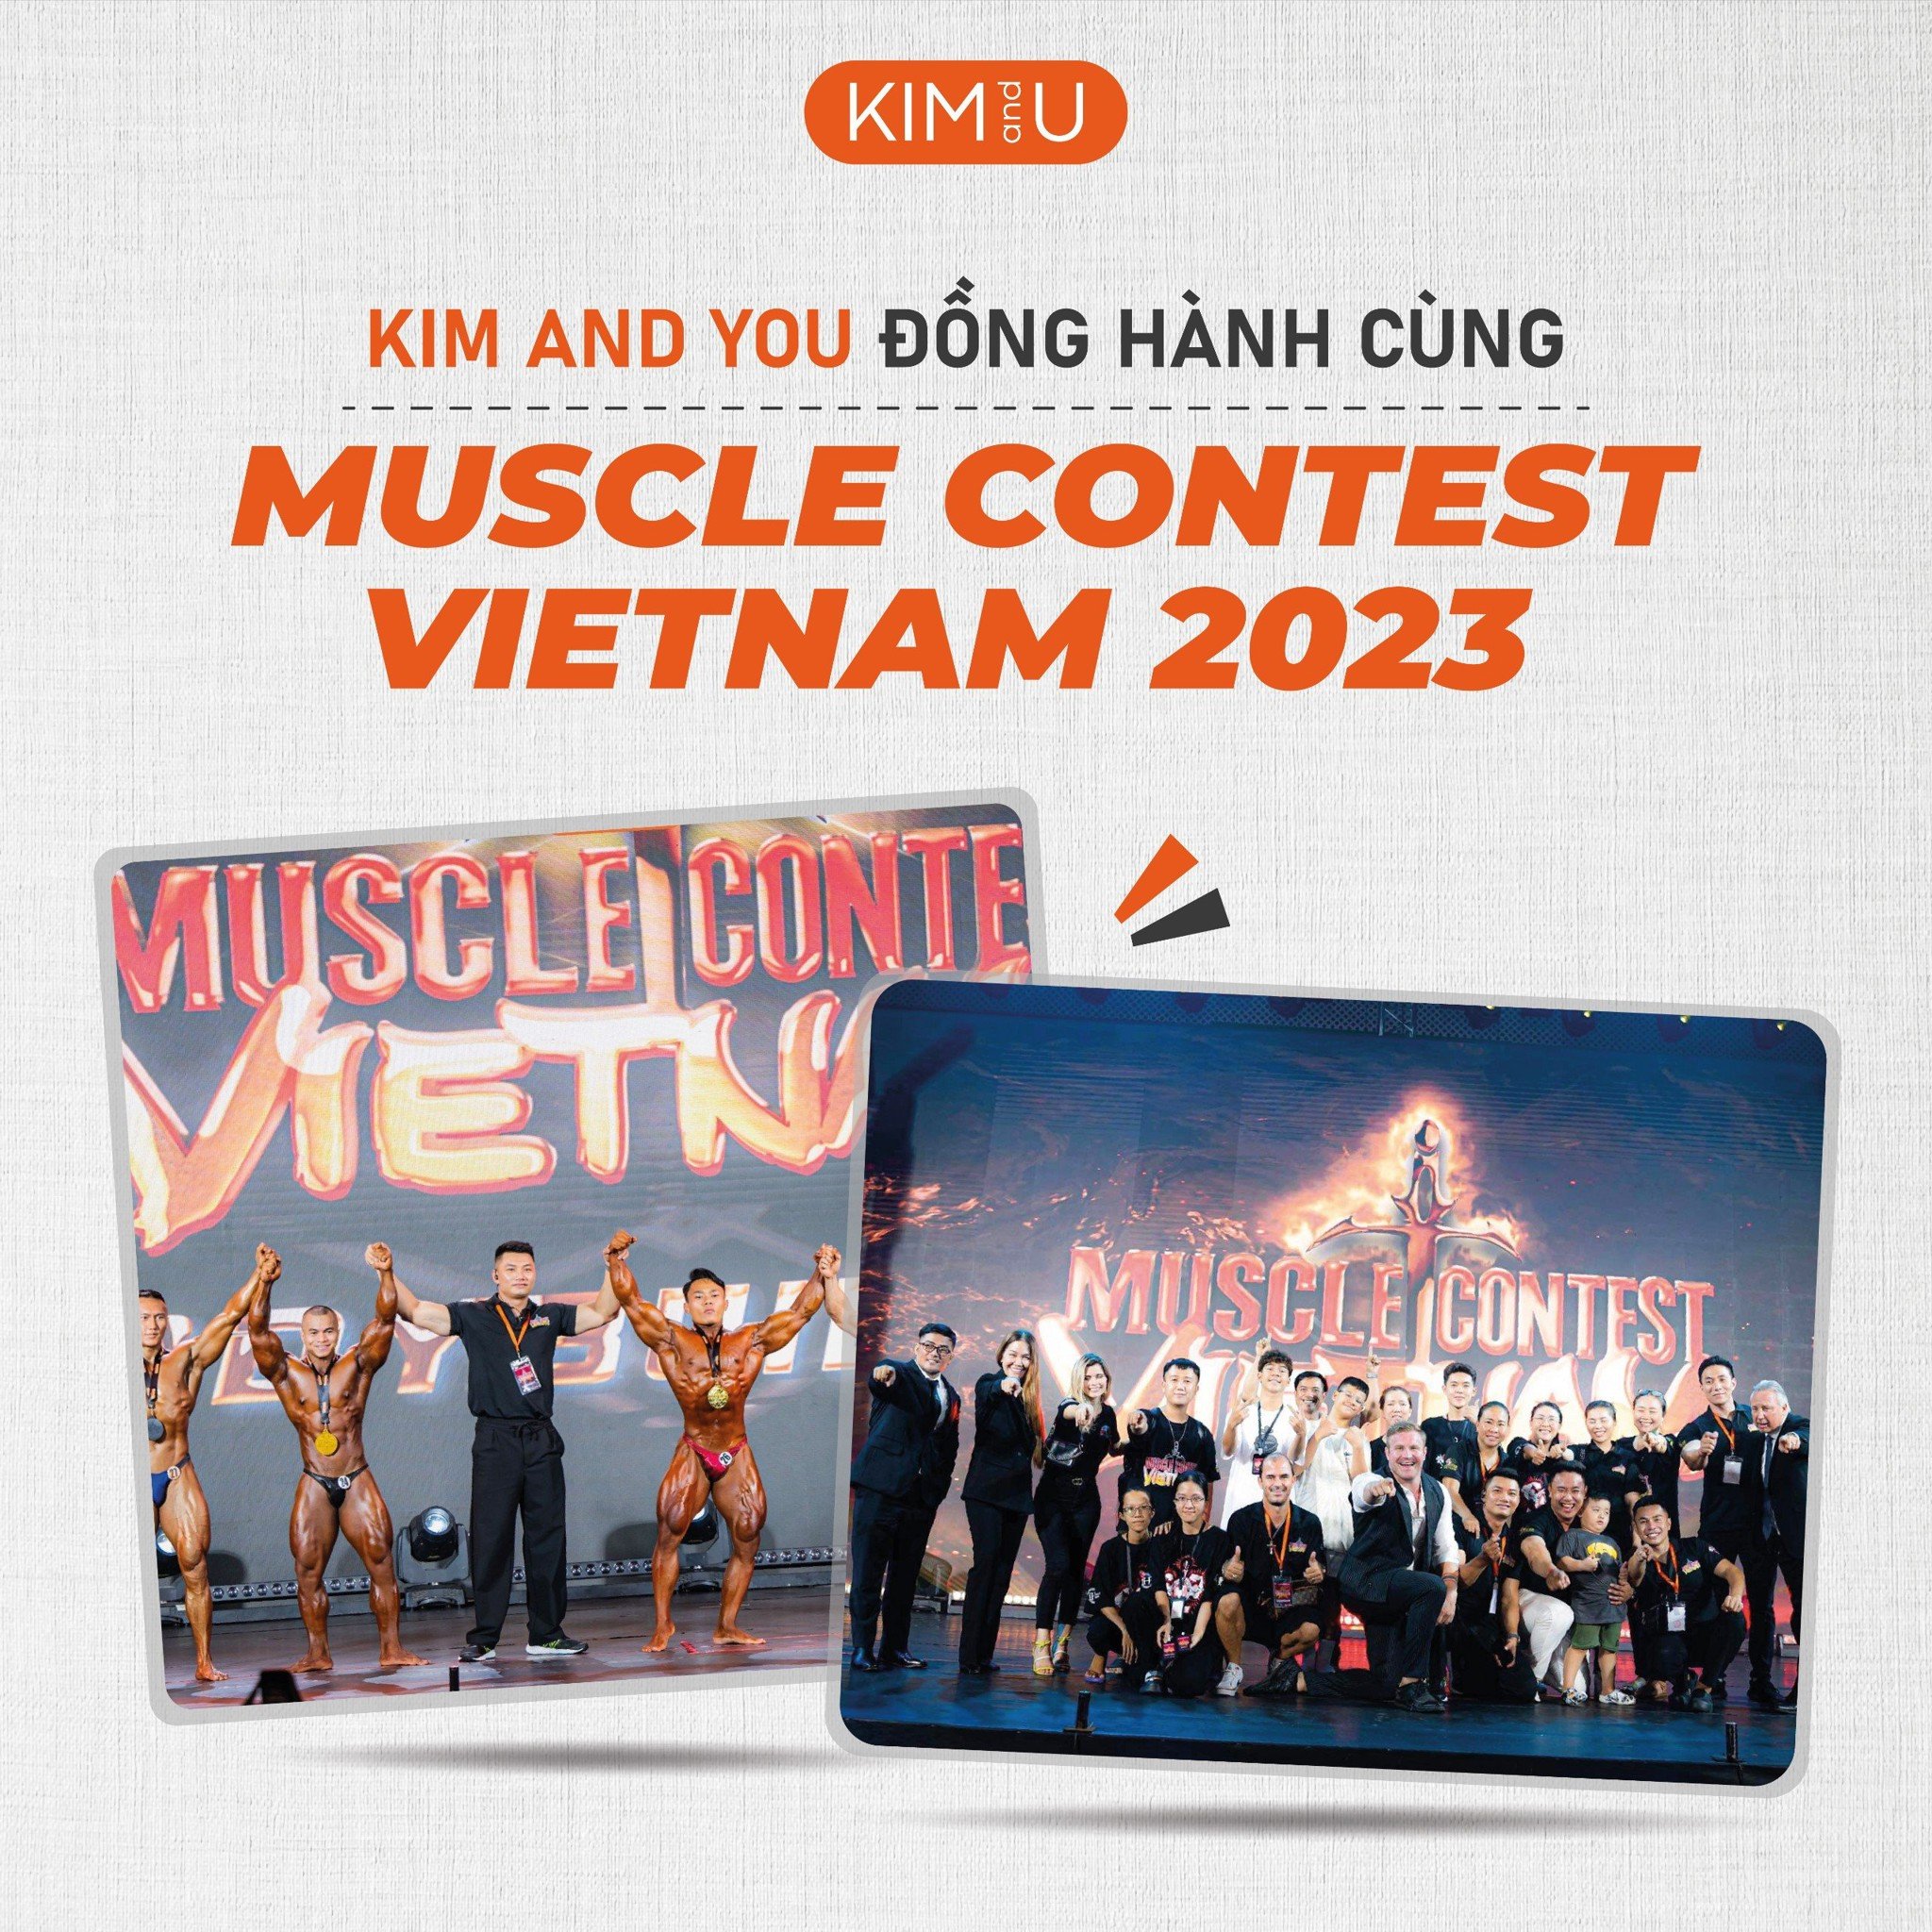 ỨC GÀ KIM AND YOU TỰ HÀO ĐỒNG HÀNH CÙNG MUSCLE CONTEST VIETNAM 2023